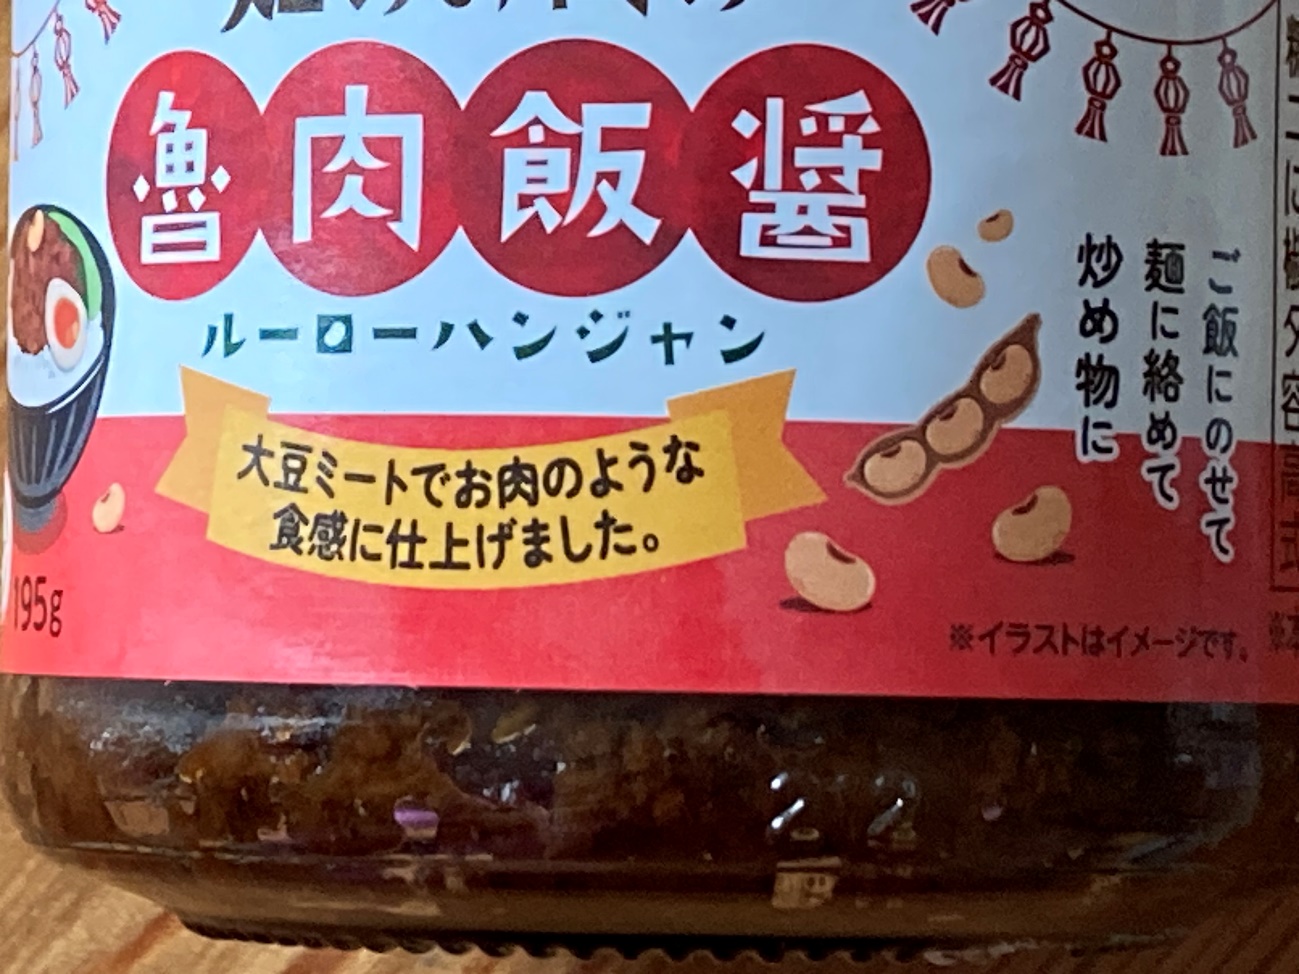 業務スーパーの畑のお肉の魯肉飯醬(ルーローハンジャン)瓶ラベルにある商品名のアップ